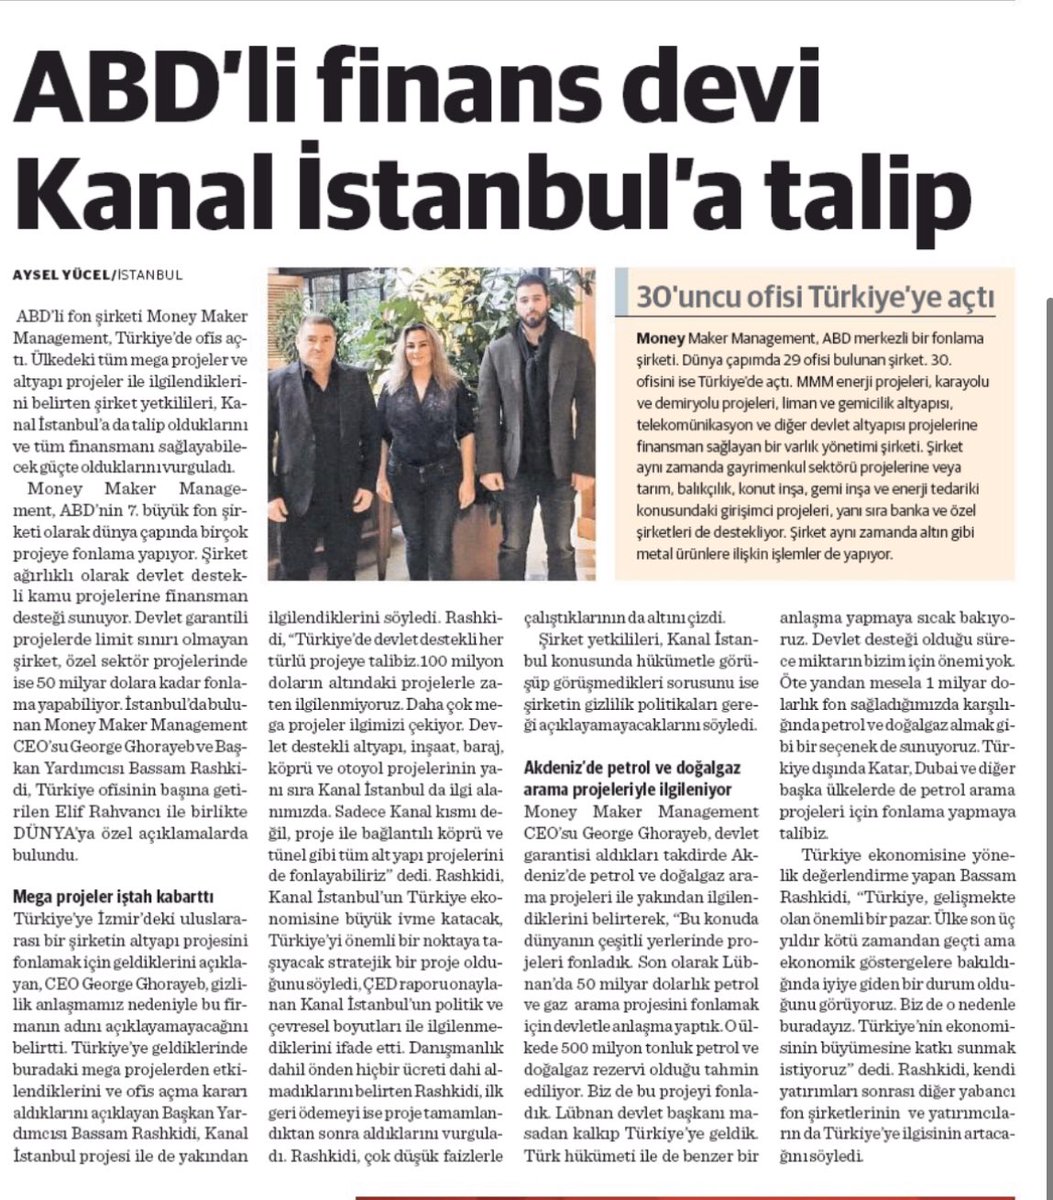 Dünya Gazetesinin "ABD’li finans devi Kanal İstanbul’a talip" başlığıyla 20 Ocak 2020 günü yayınladığı haber